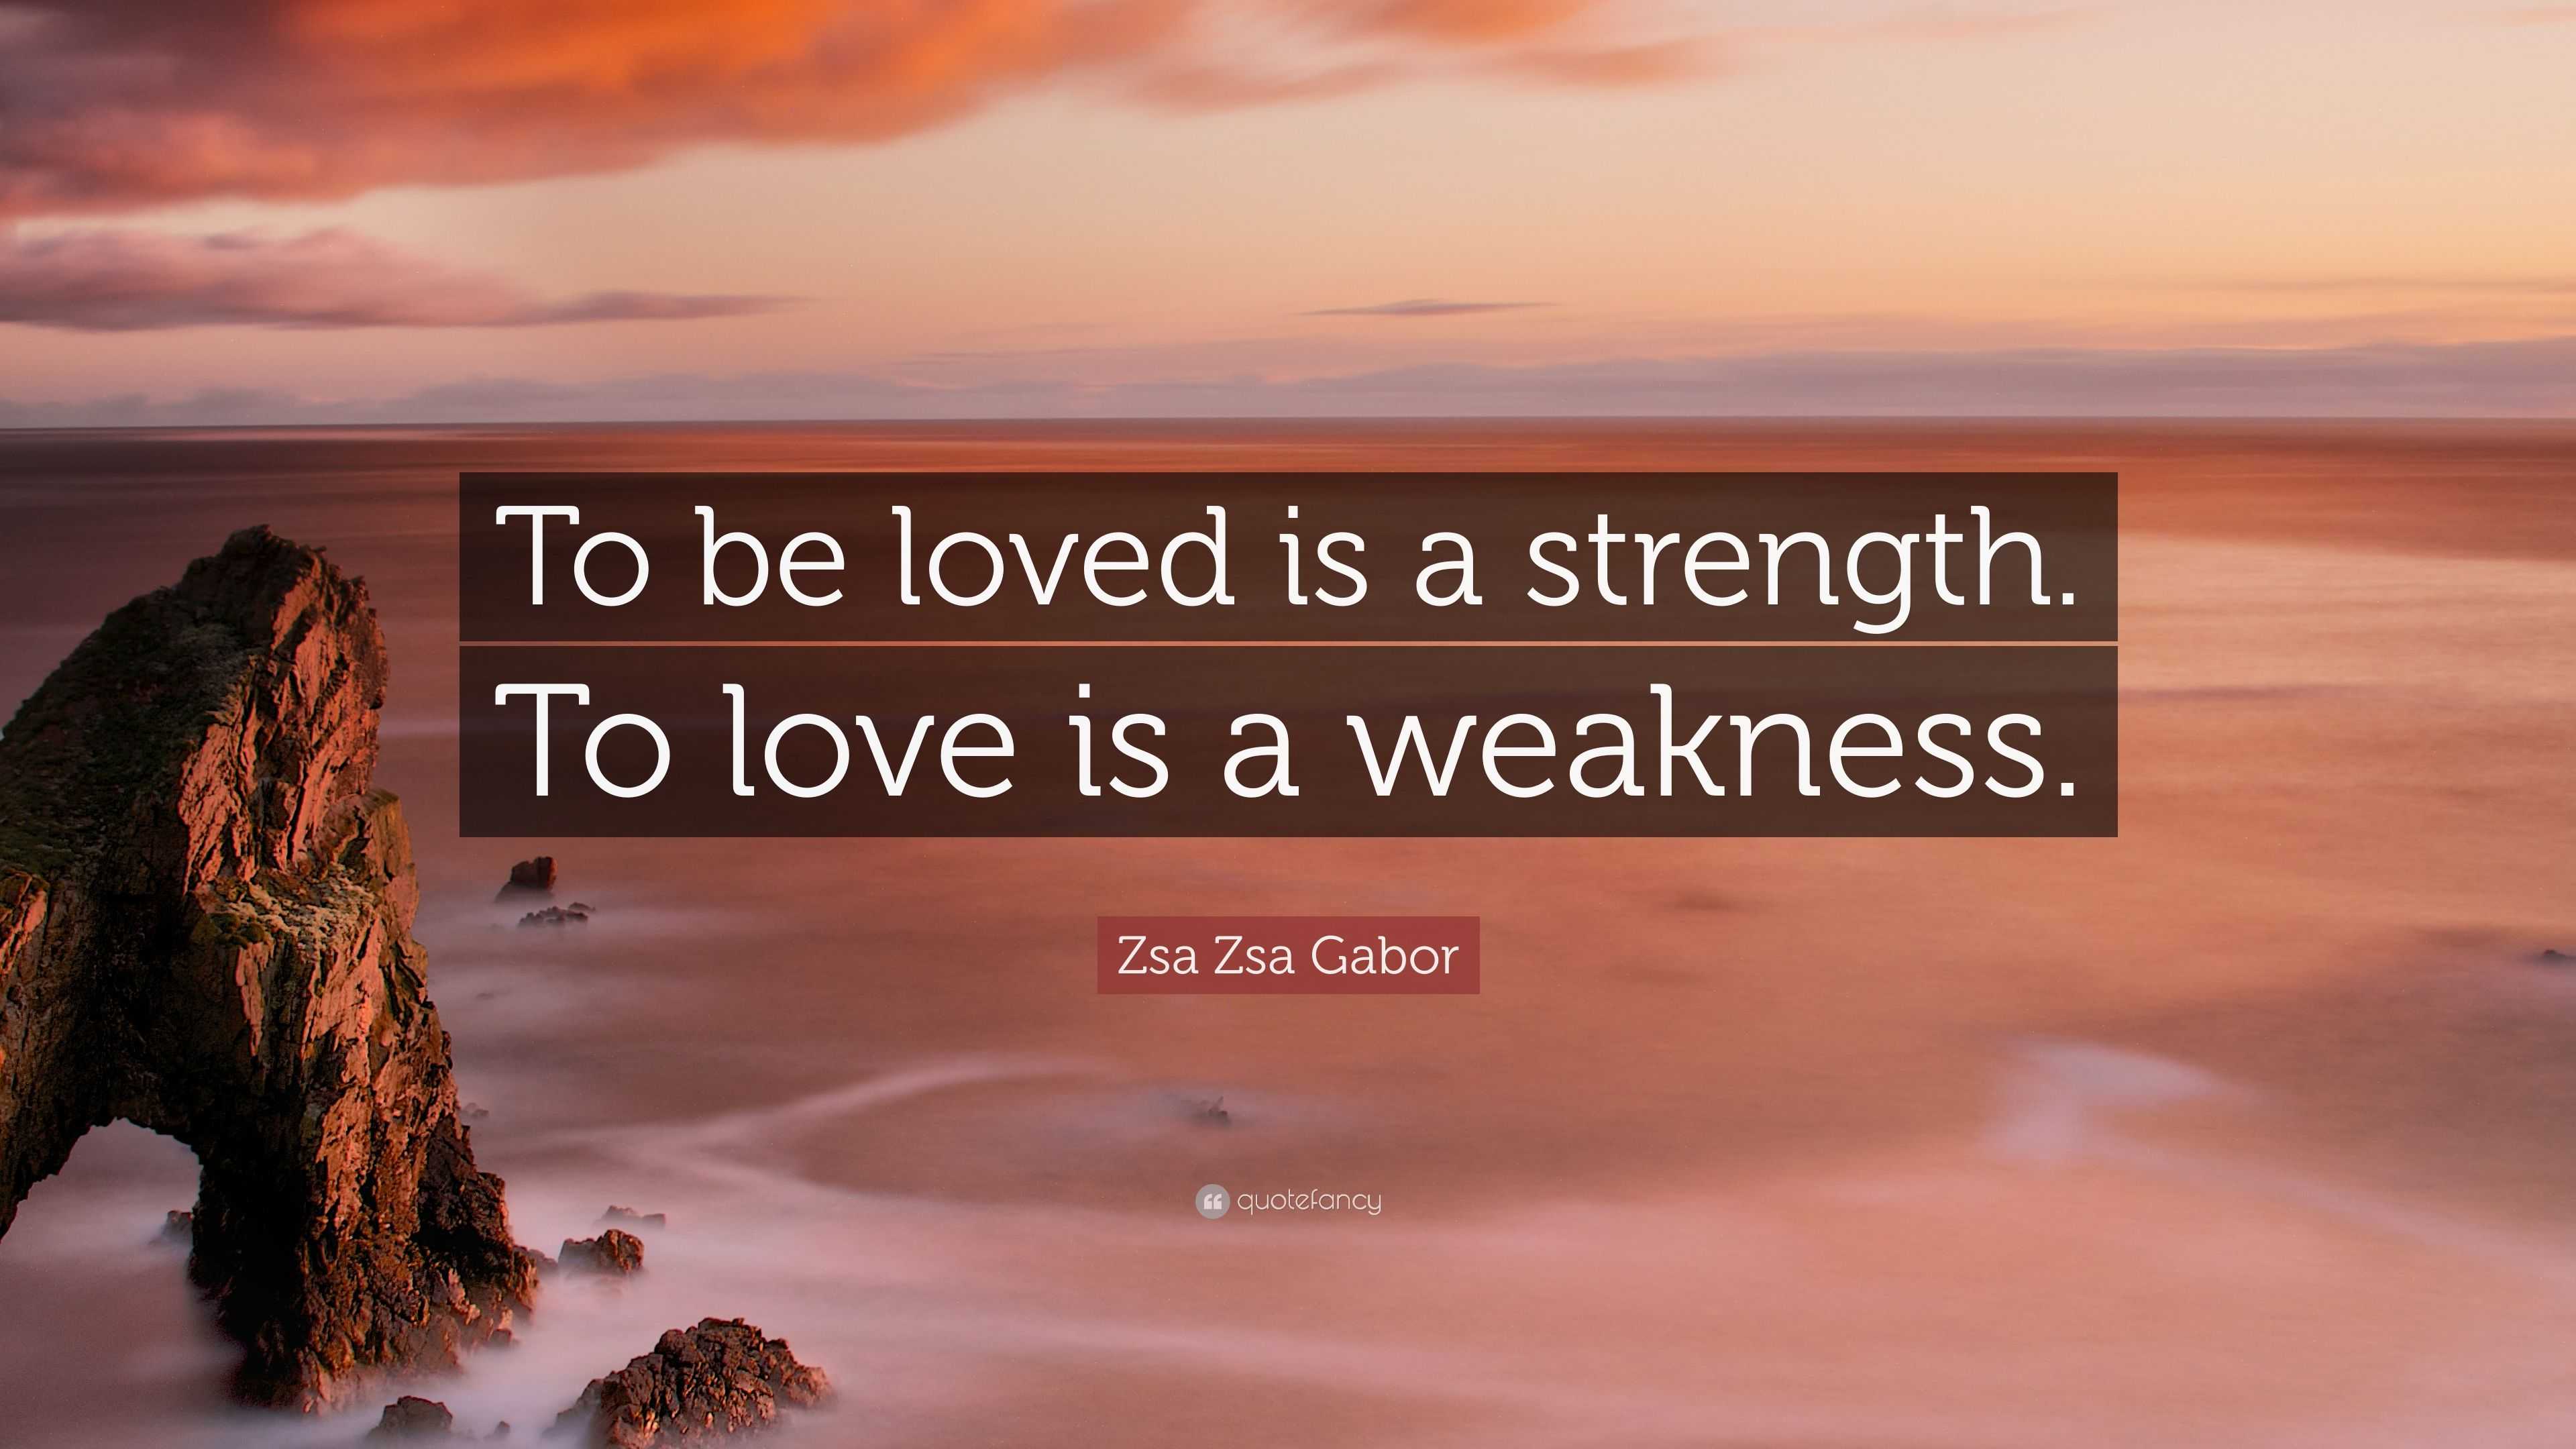 is love a weakness